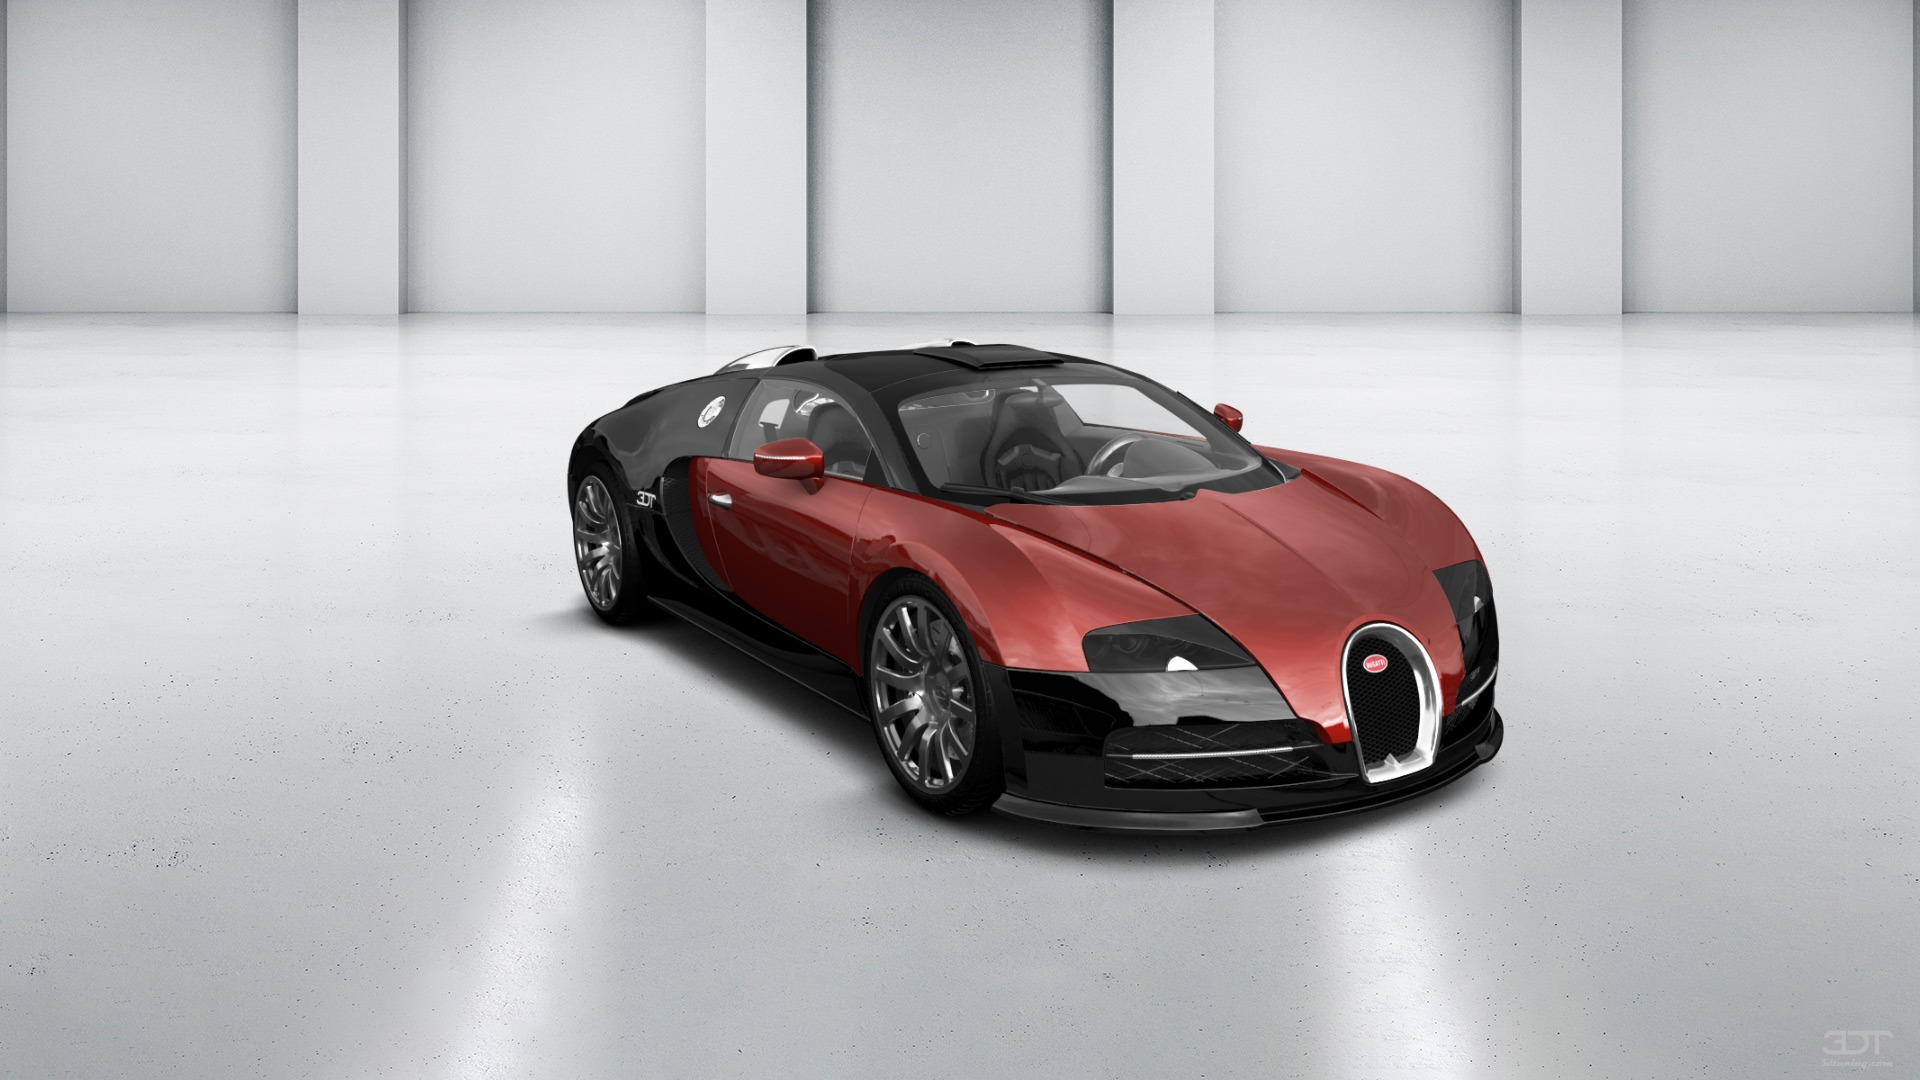 Bugatti Veyron 16.4 Grand Sport Vitesse 2 door targa top 2012 tuning